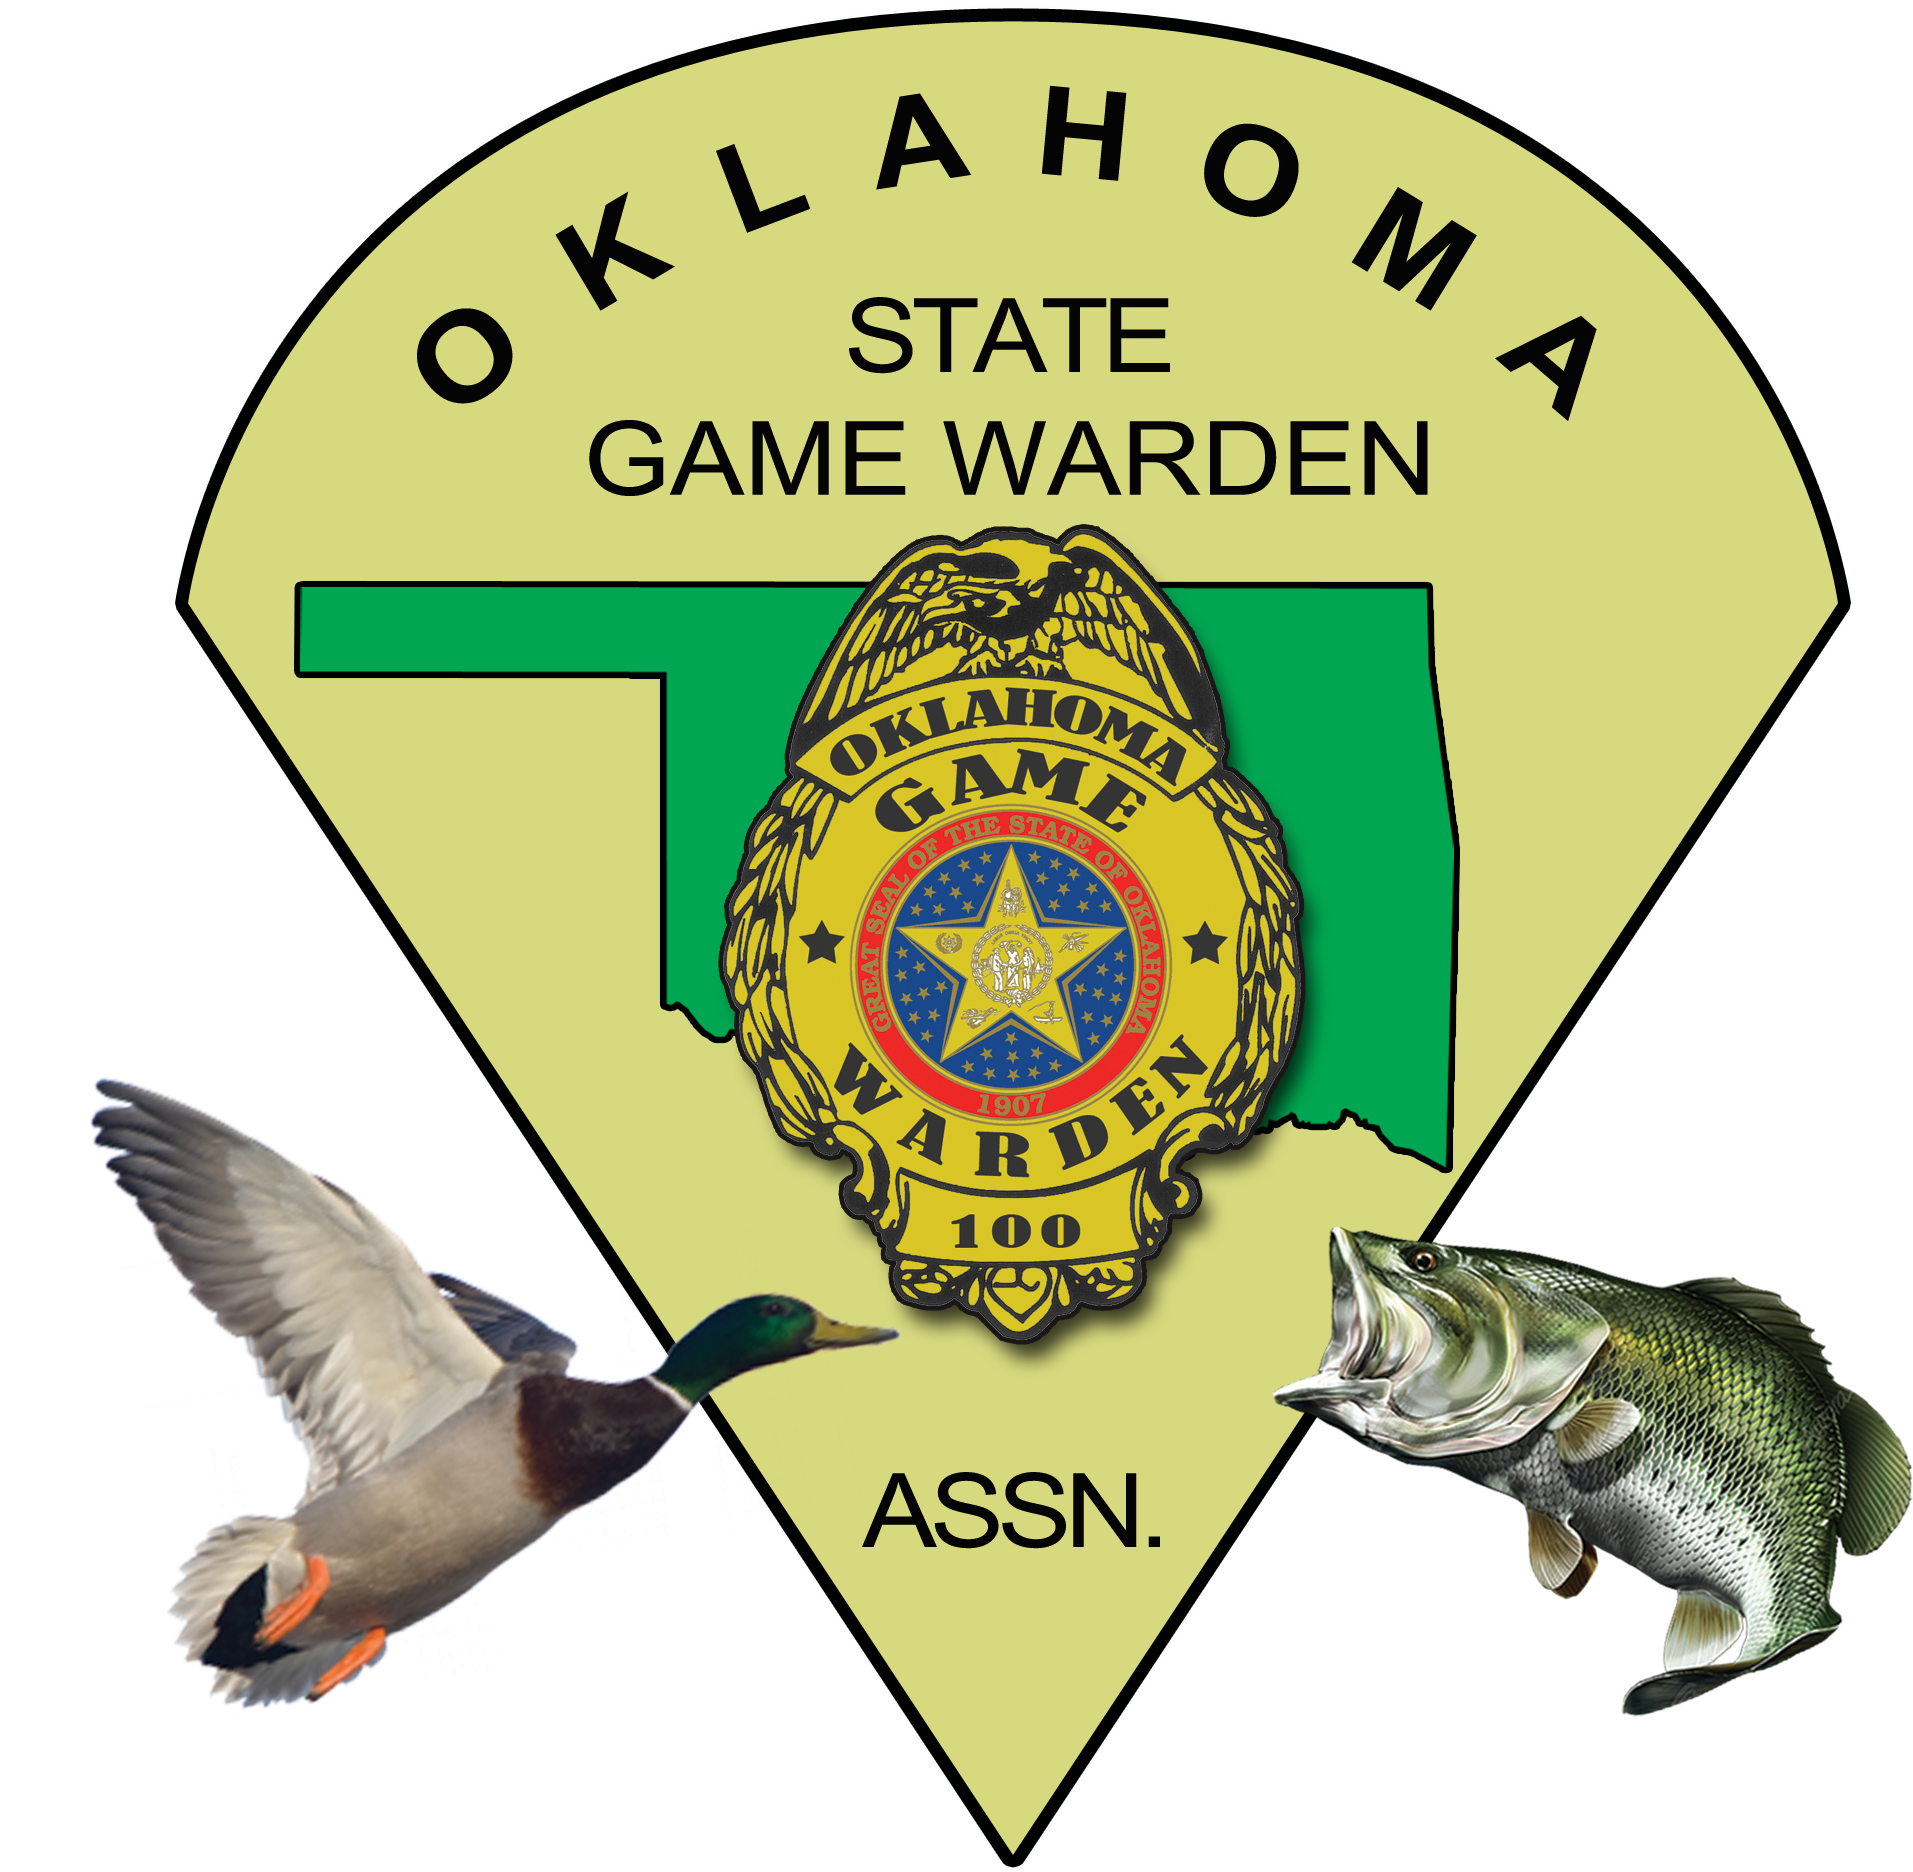 Oklahoma State Game Warden Association - Oklahoma (2400x2400)